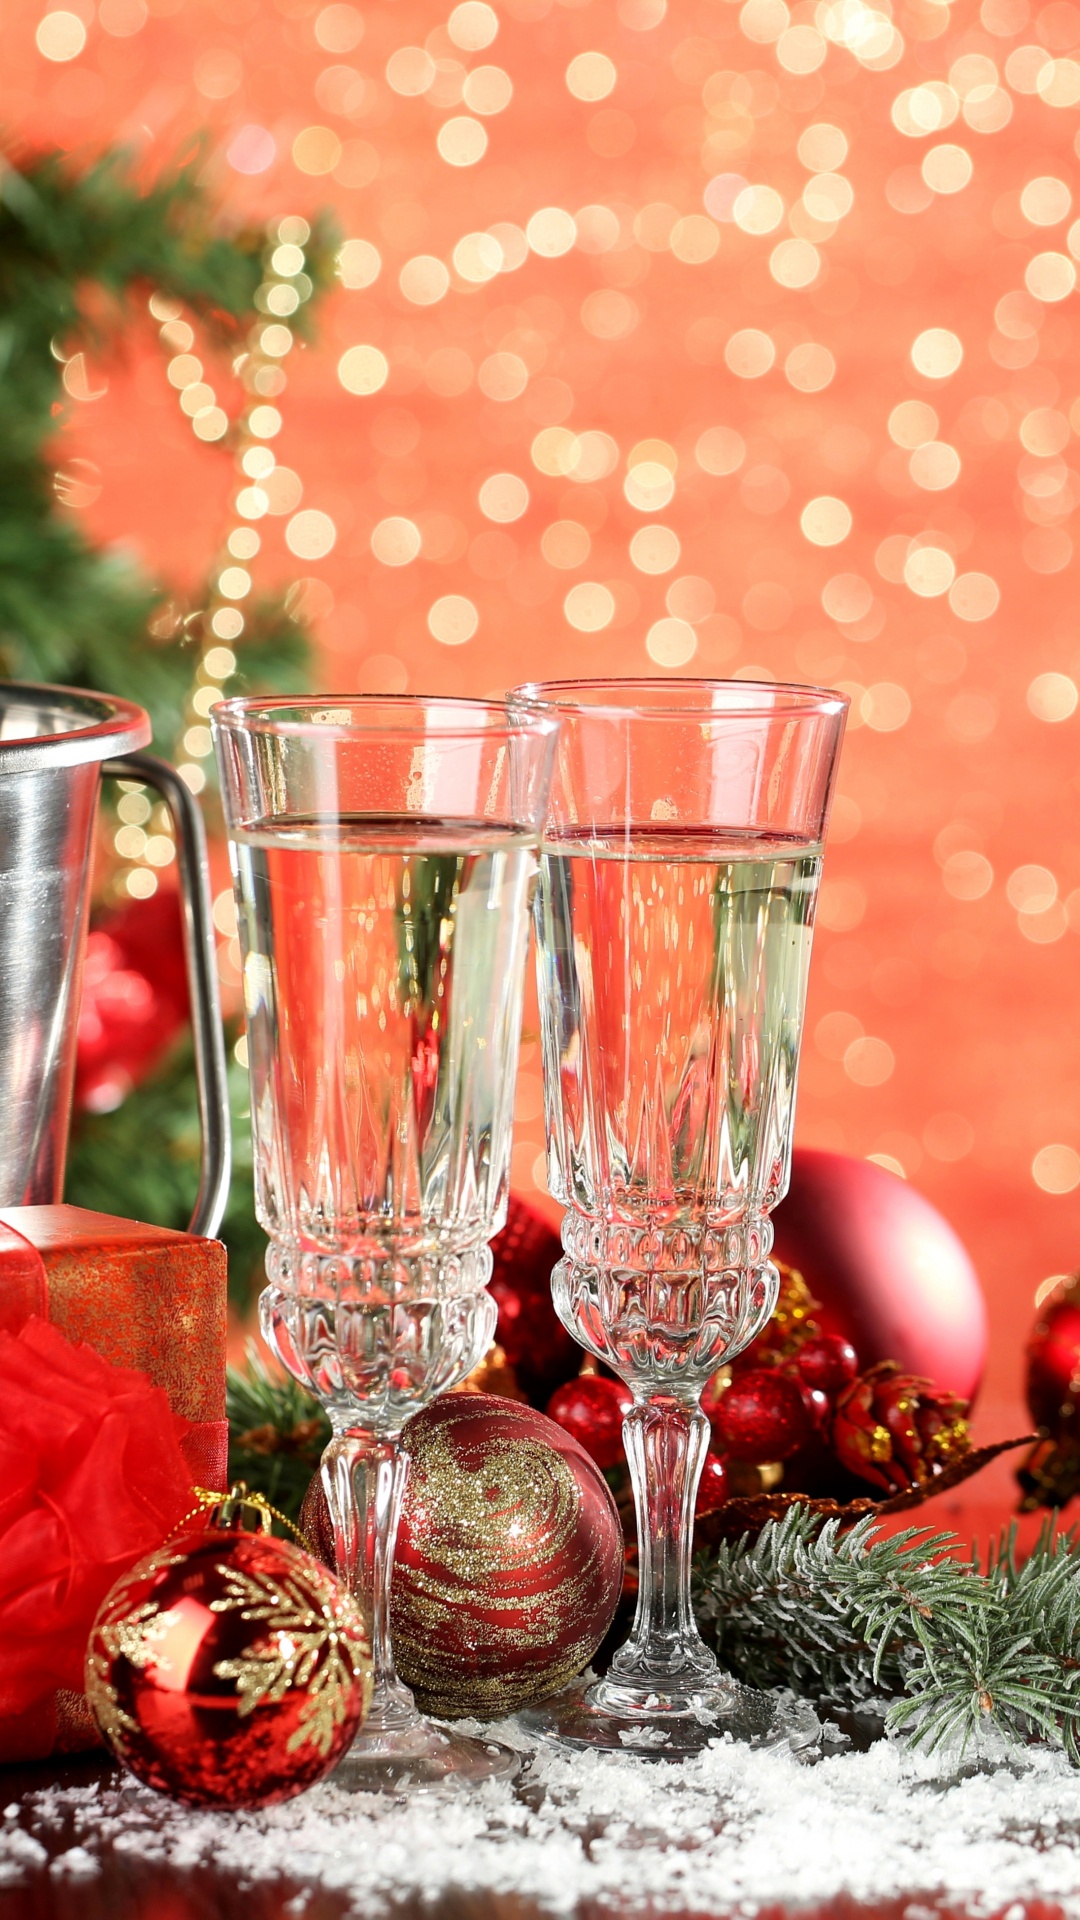 香槟, 新的一年, 圣诞节的装饰品, 圣诞装饰, 圣诞节 壁纸 1080x1920 允许